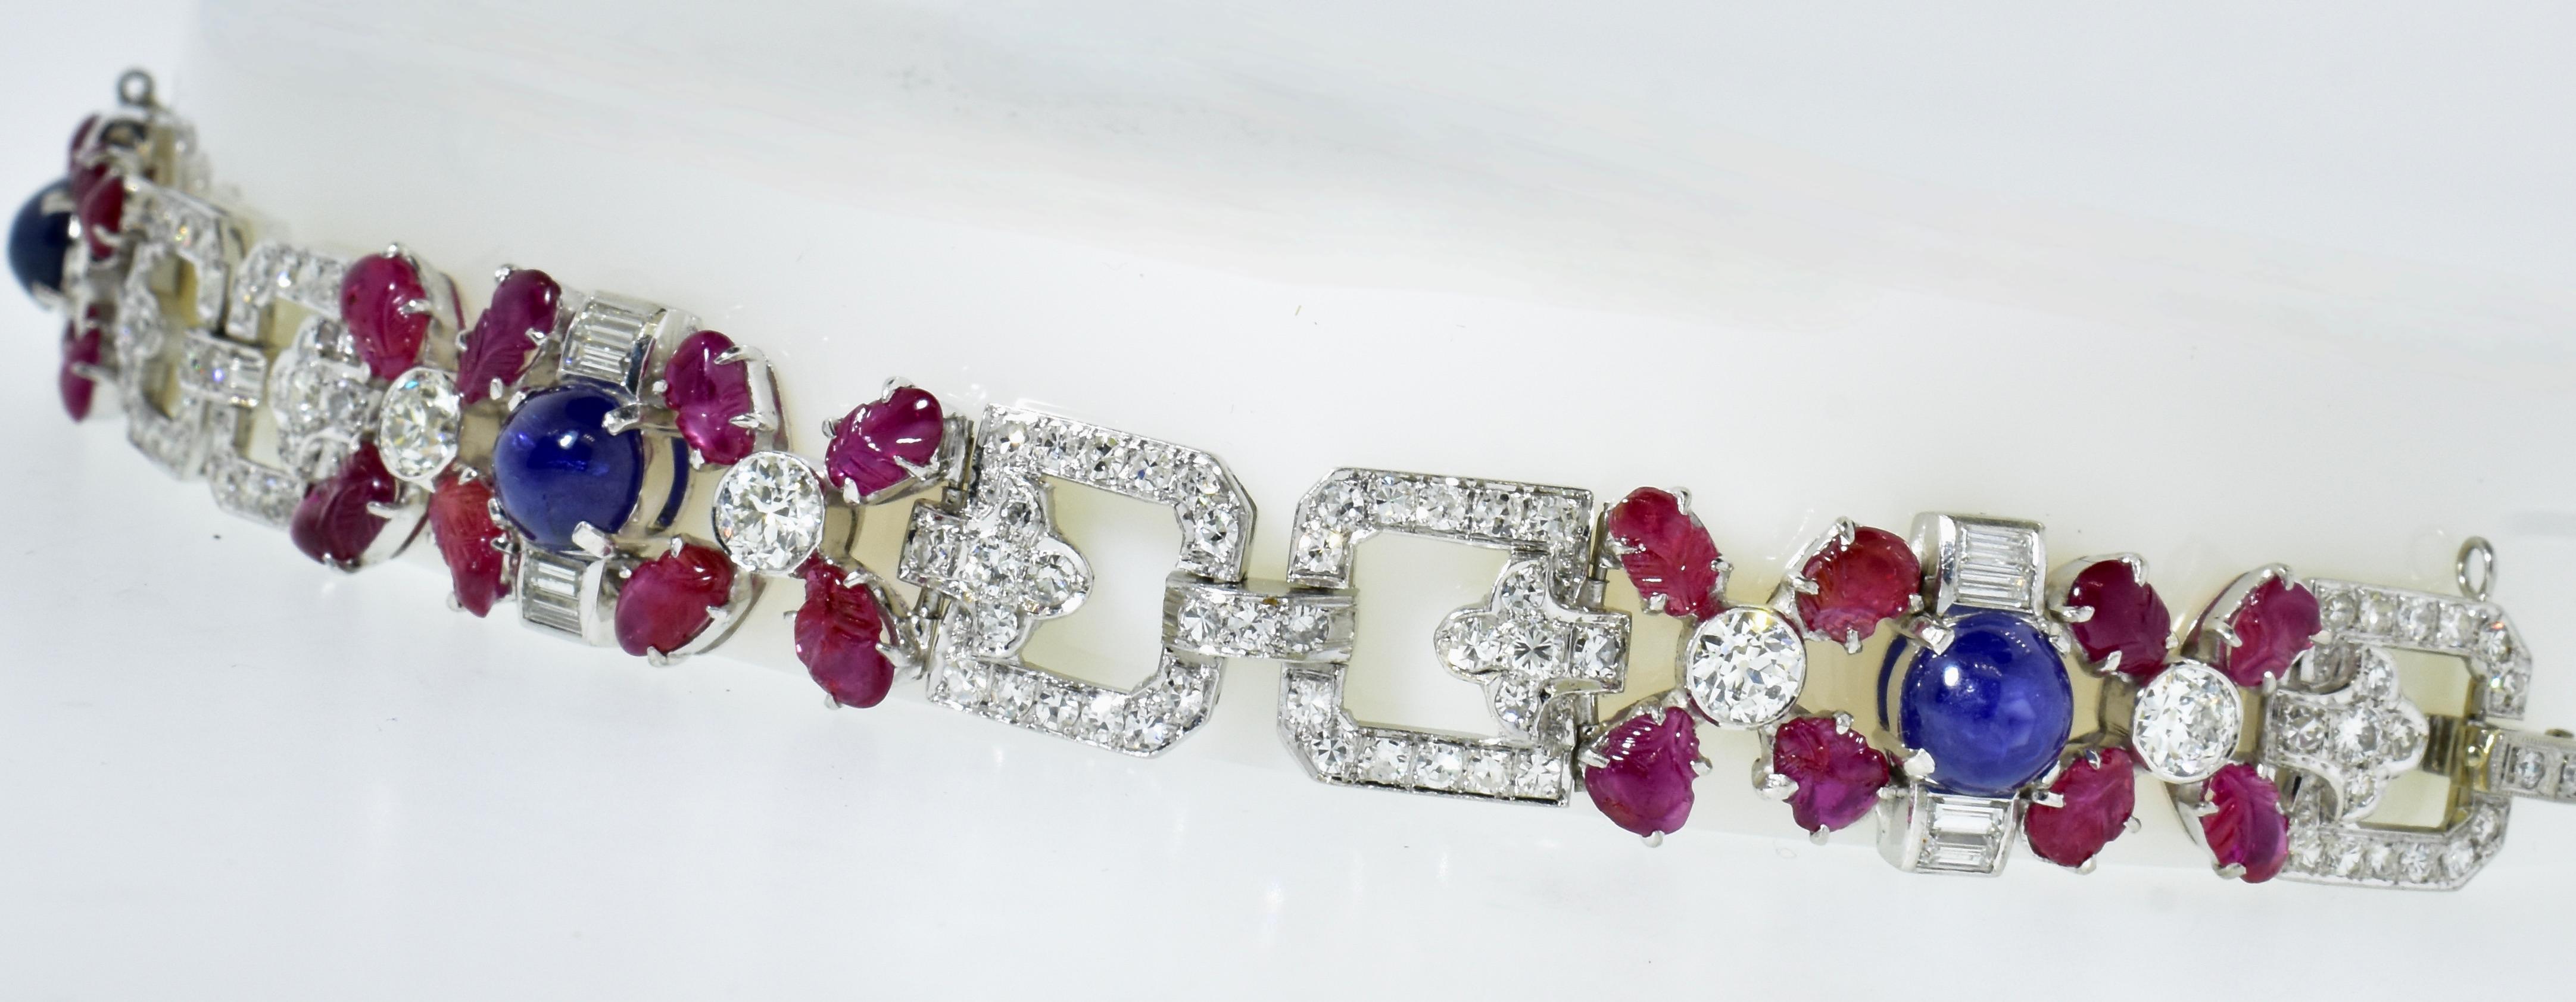 Art Deco Tutti Frutti Platinum, Diamond, Ruby & Sapphire Bracelet c. 1922 In Excellent Condition For Sale In Aspen, CO